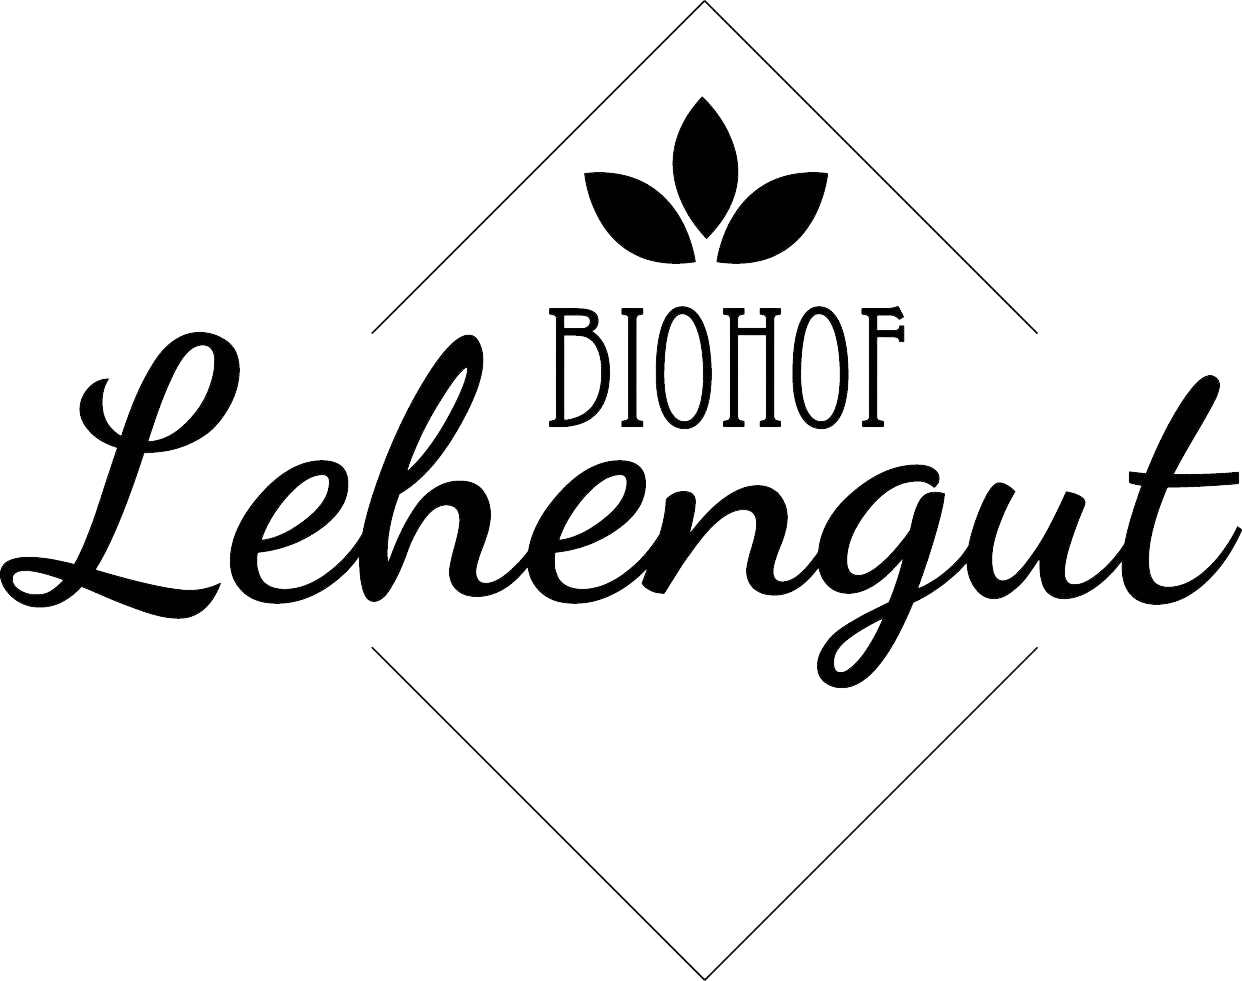 Logo Lehengut